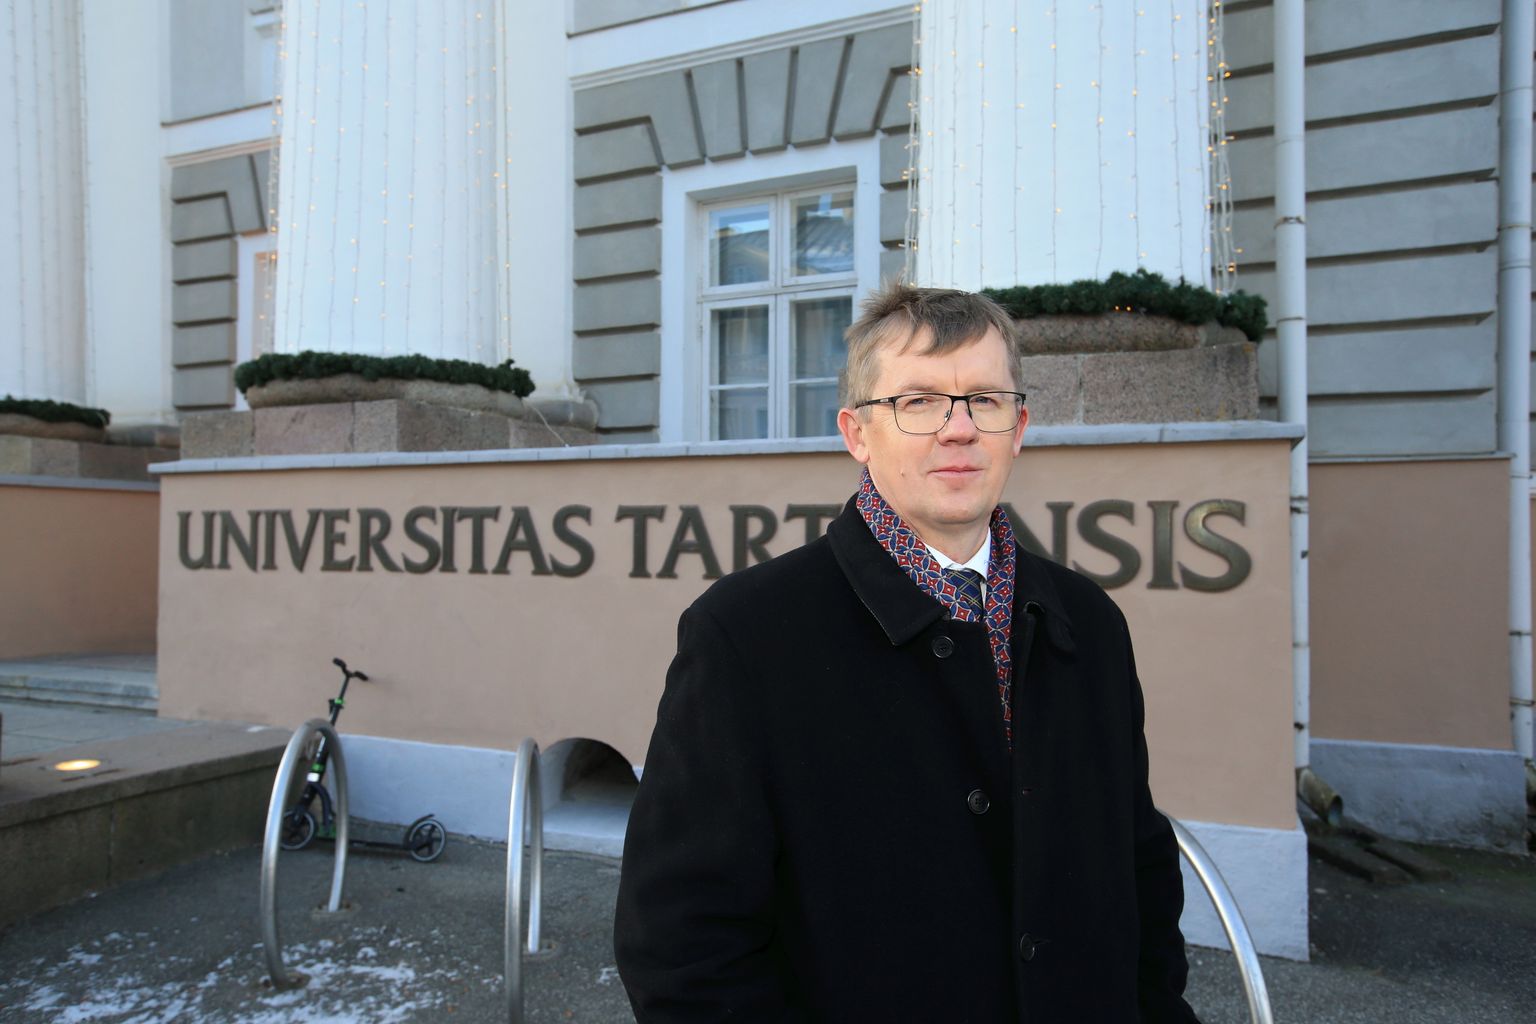 Meelis Luhti ametiaeg Tartu ülikooli kantslerina lõpeb 3. märtsil. Samal päeval peetakse riigikogu valimisi, kus ta kandideerib sotsiaaldemokraatide nimekirjas.